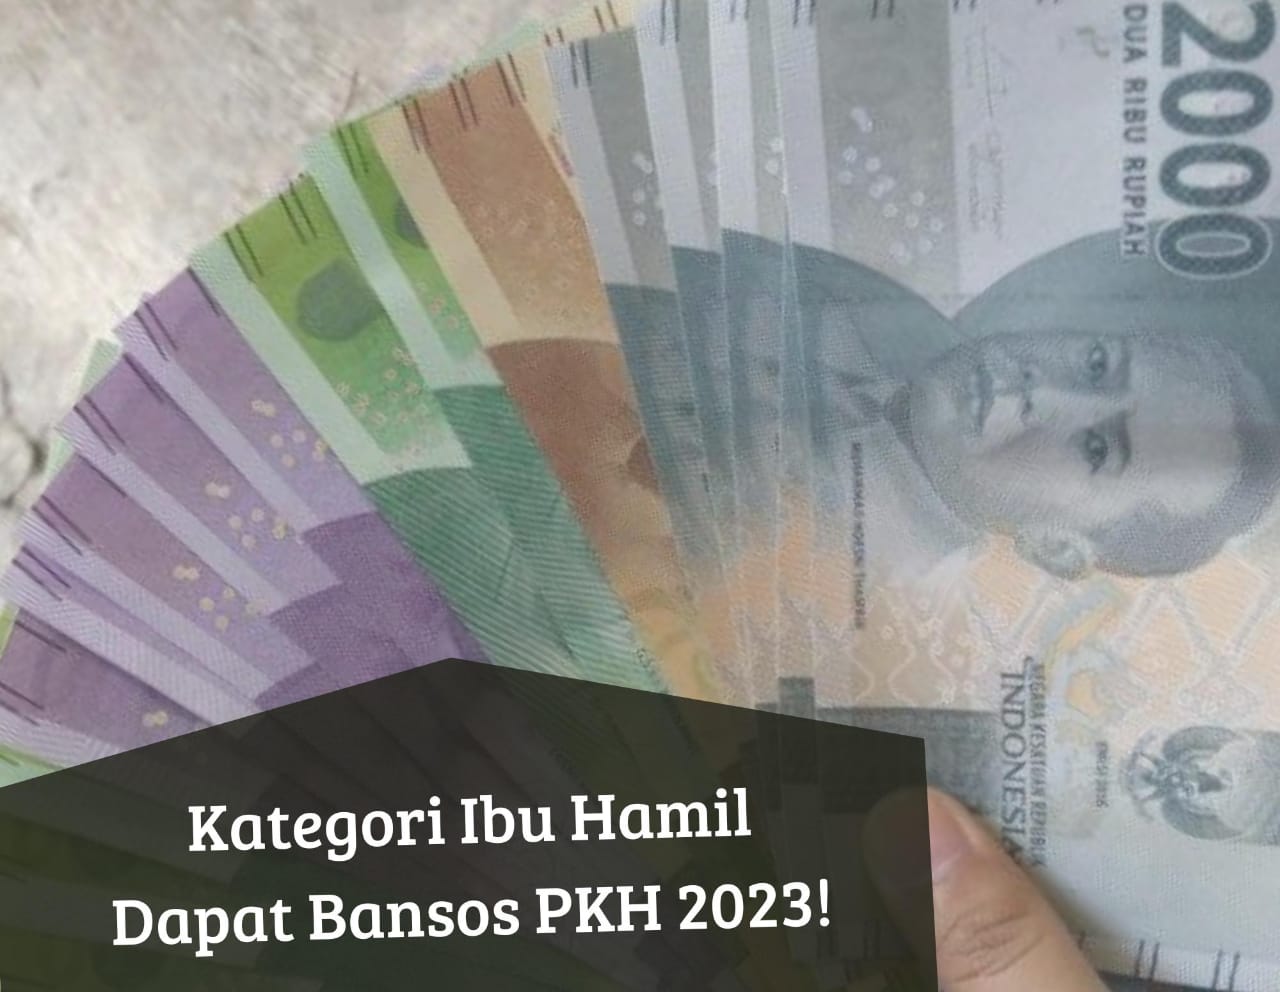 Bansos PKH 2023 Masih Cair, Ibu Hamil Siap-siap Dapat Uang Bantuan Rp750.000, Cek Segera Status Penerima